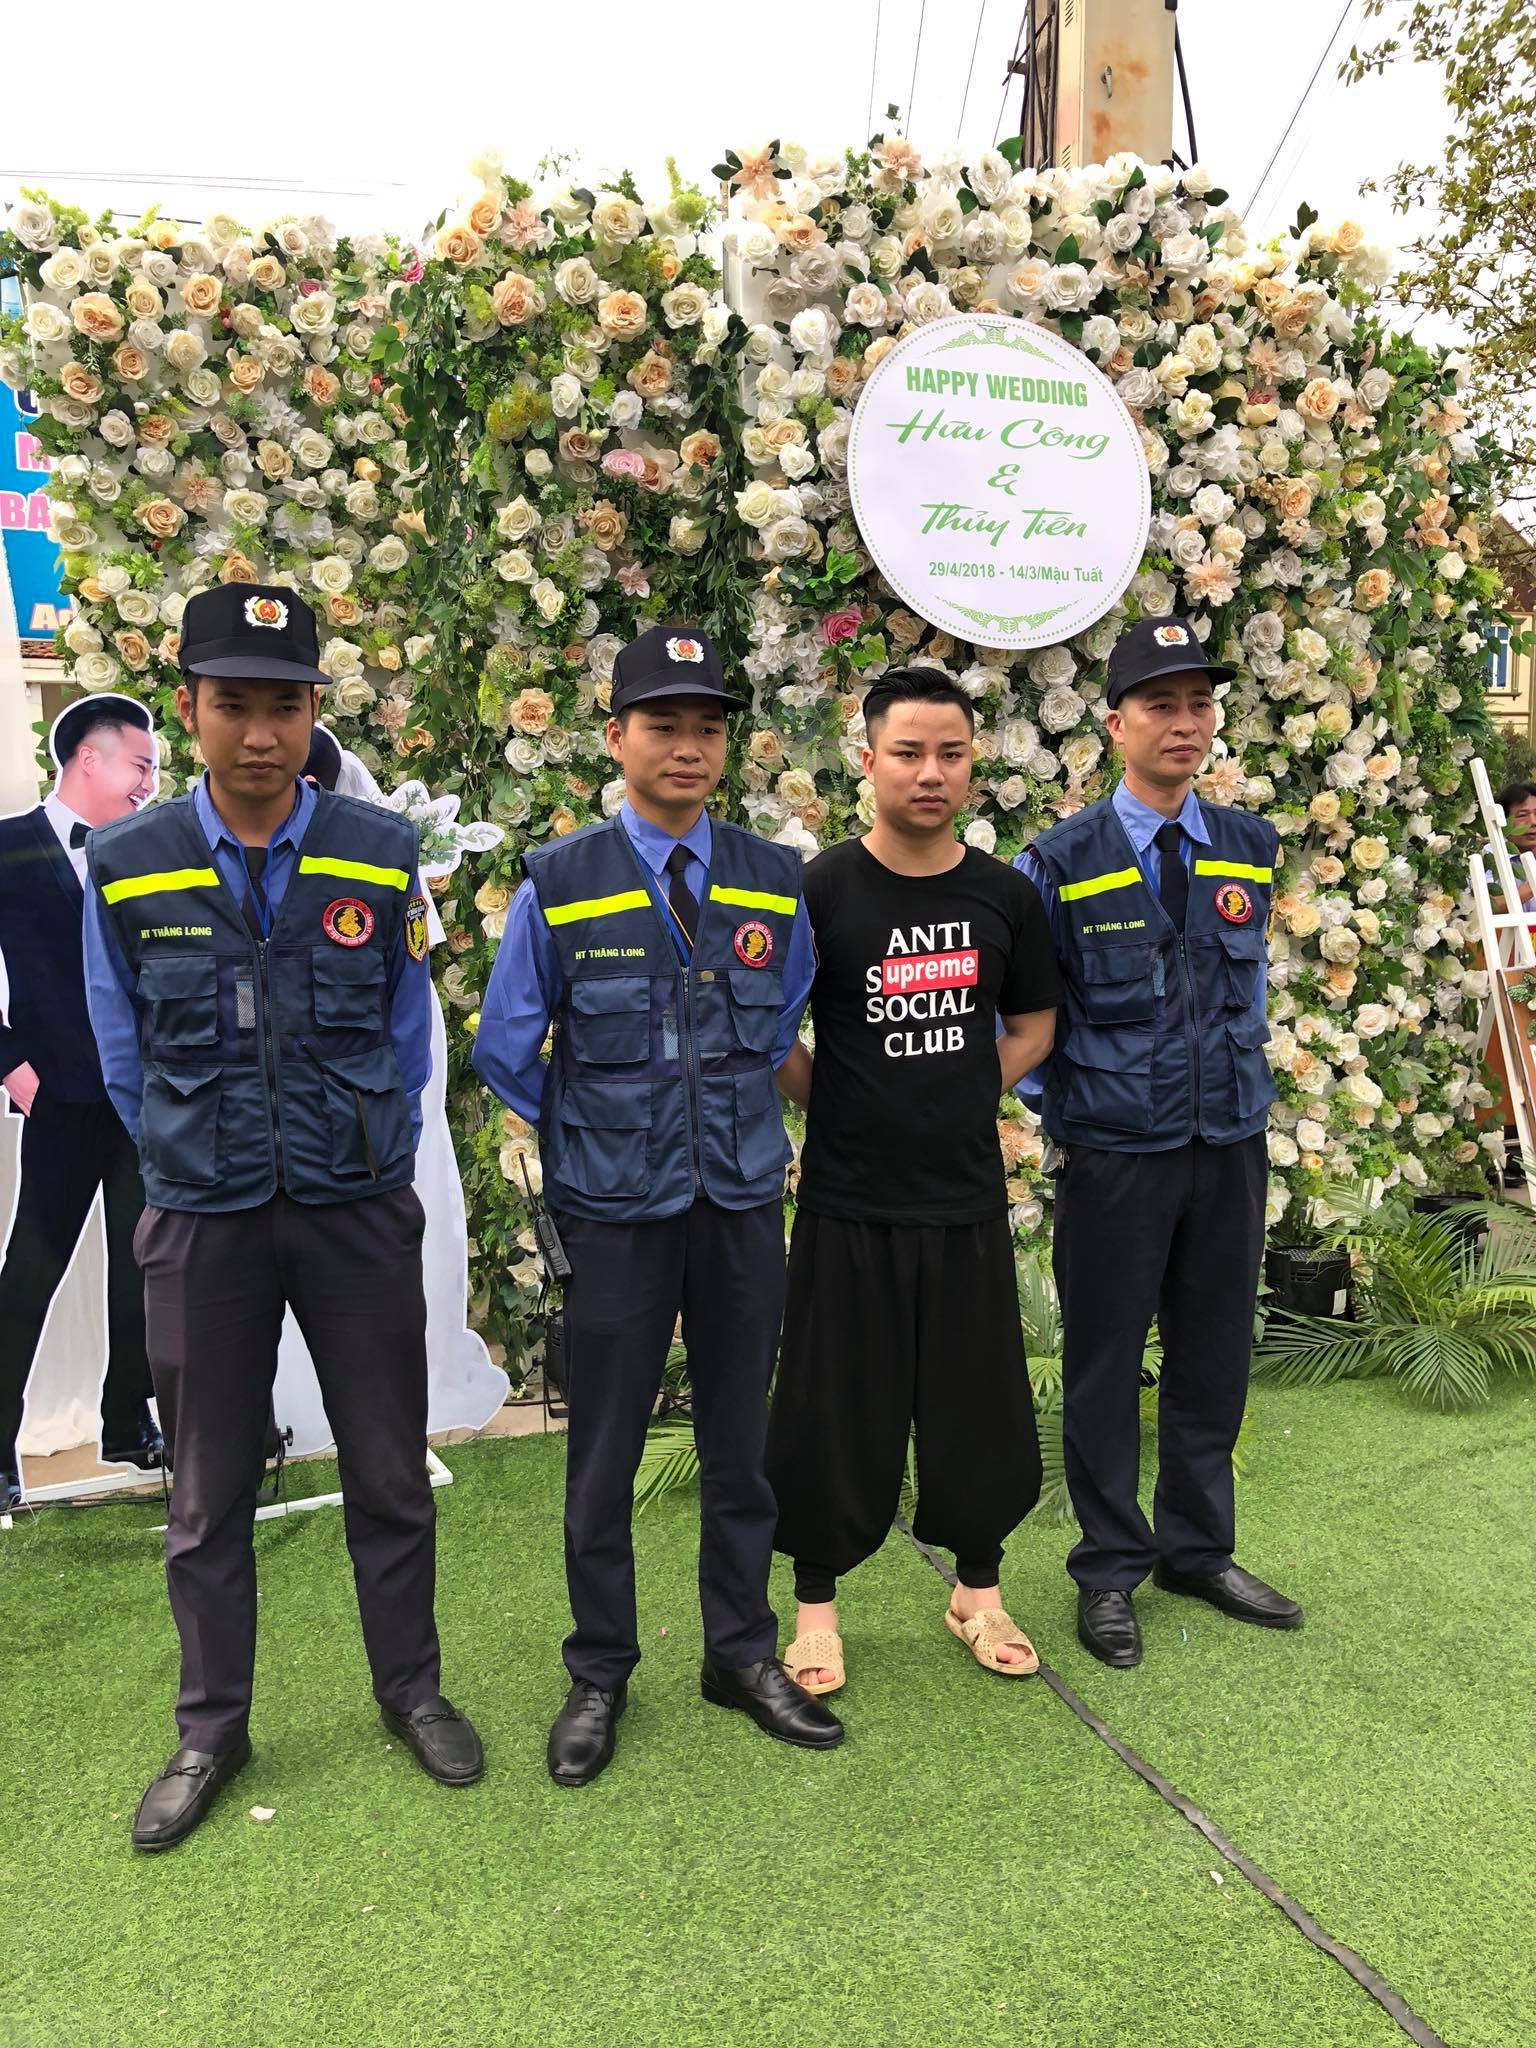 Mr. Đàm, Lam Trường lặn lội về tận quê Hữu Công dự đám cưới, có cả dàn vệ sĩ thắt chặt an ninh ở sự kiện 10